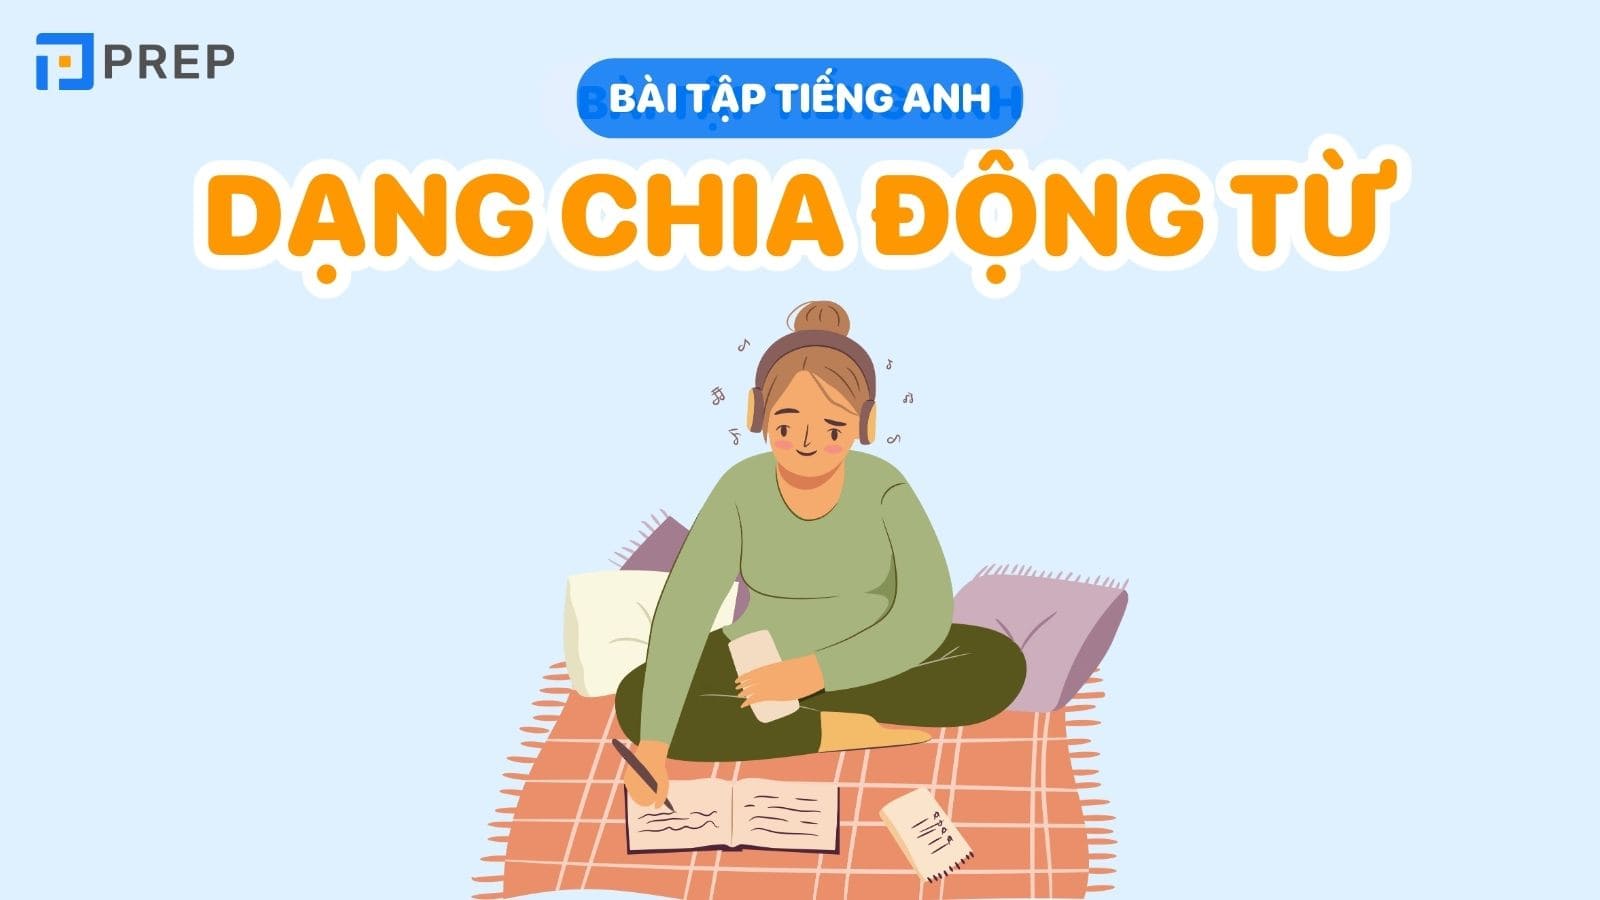 bai-tap-chia-dong-tu-tieng-an.jpg